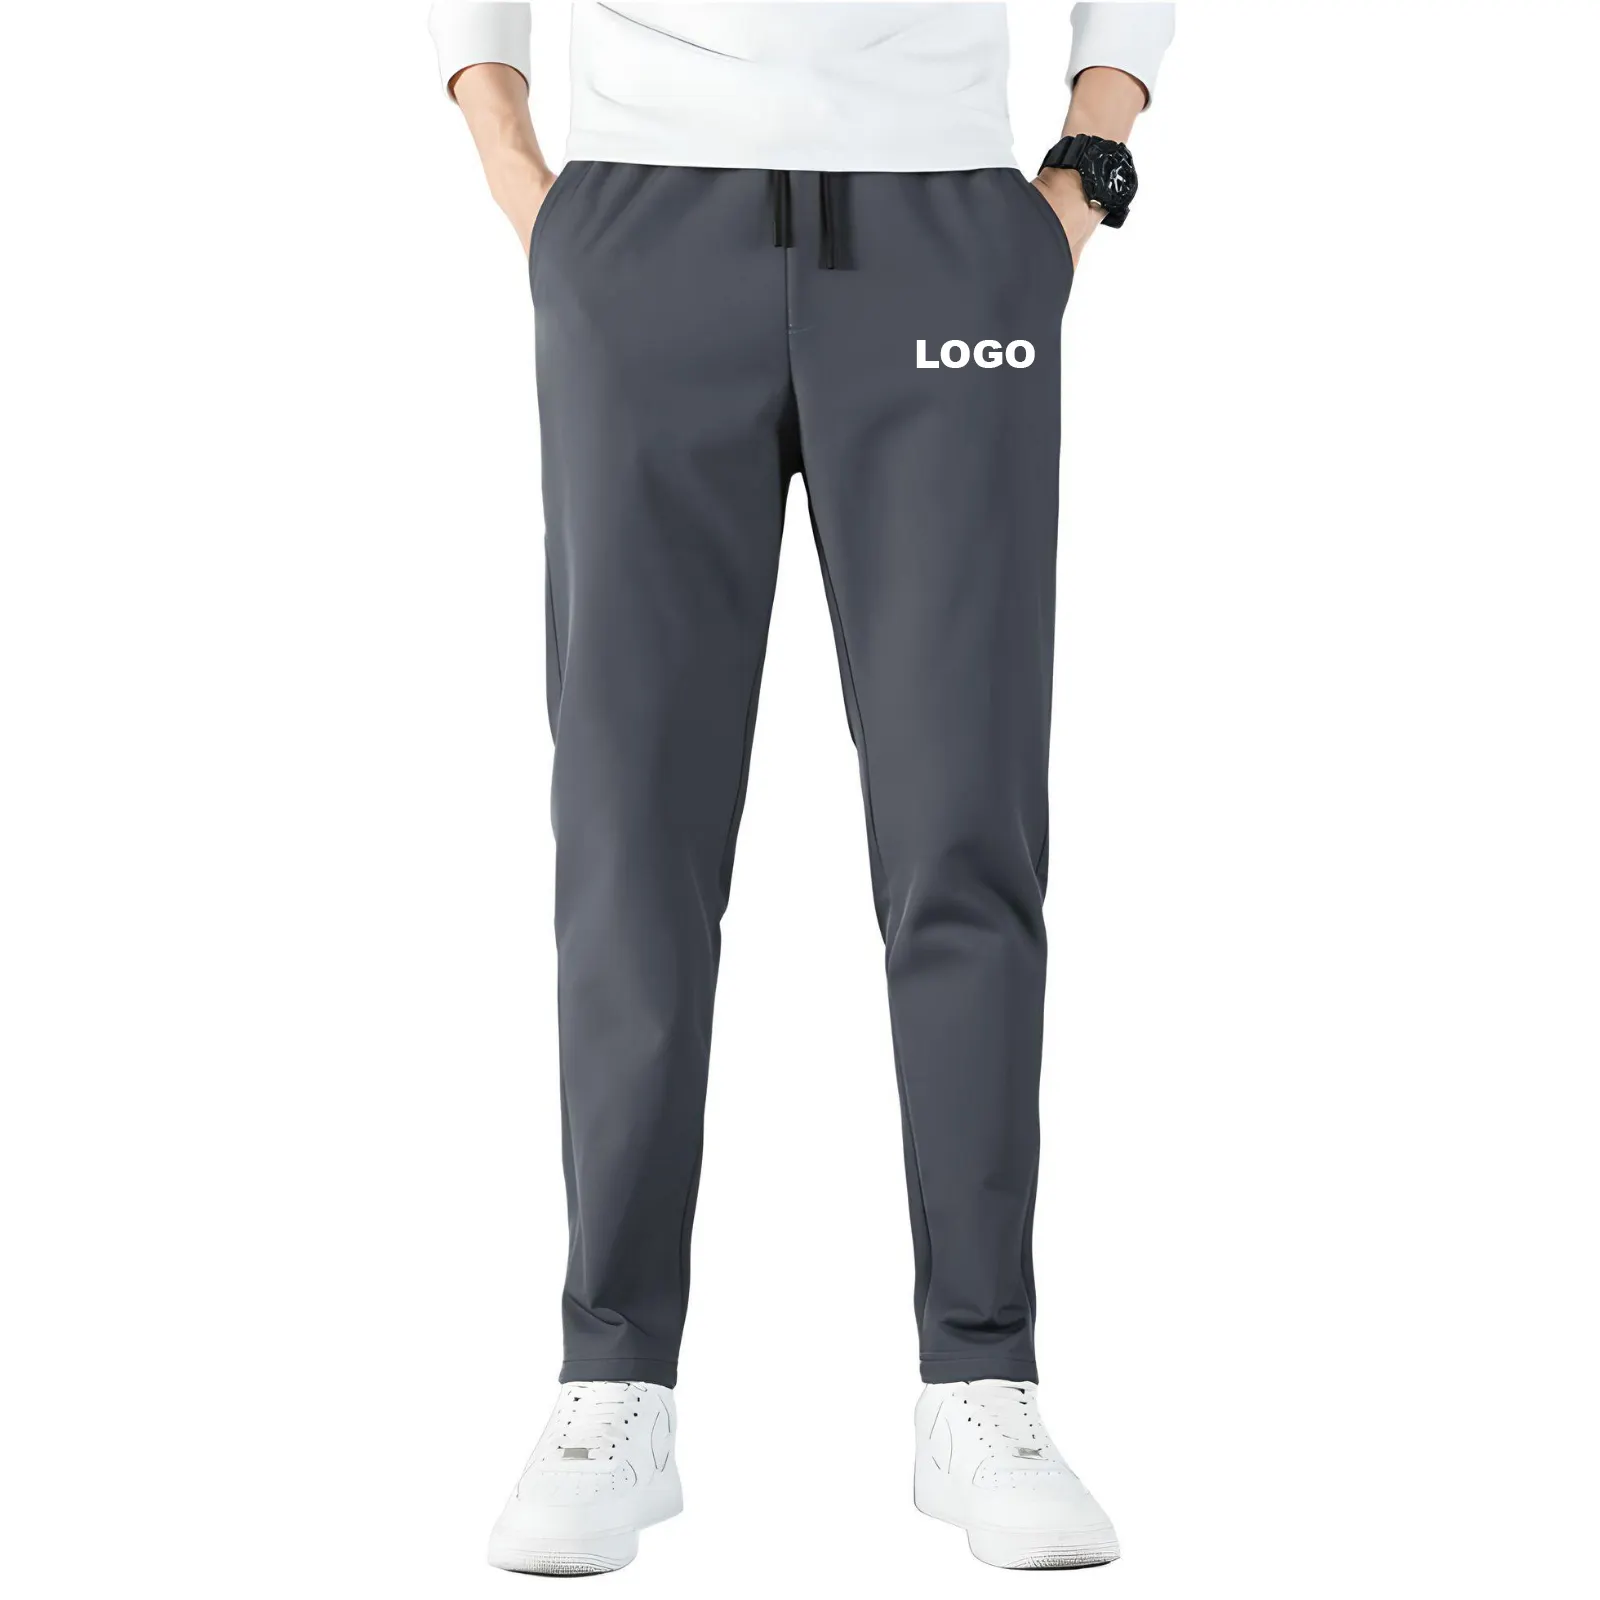 Sıcak satış yüksek kaliteli sıska spor erkek koşu pantolonları rahat pantolon düz elastik